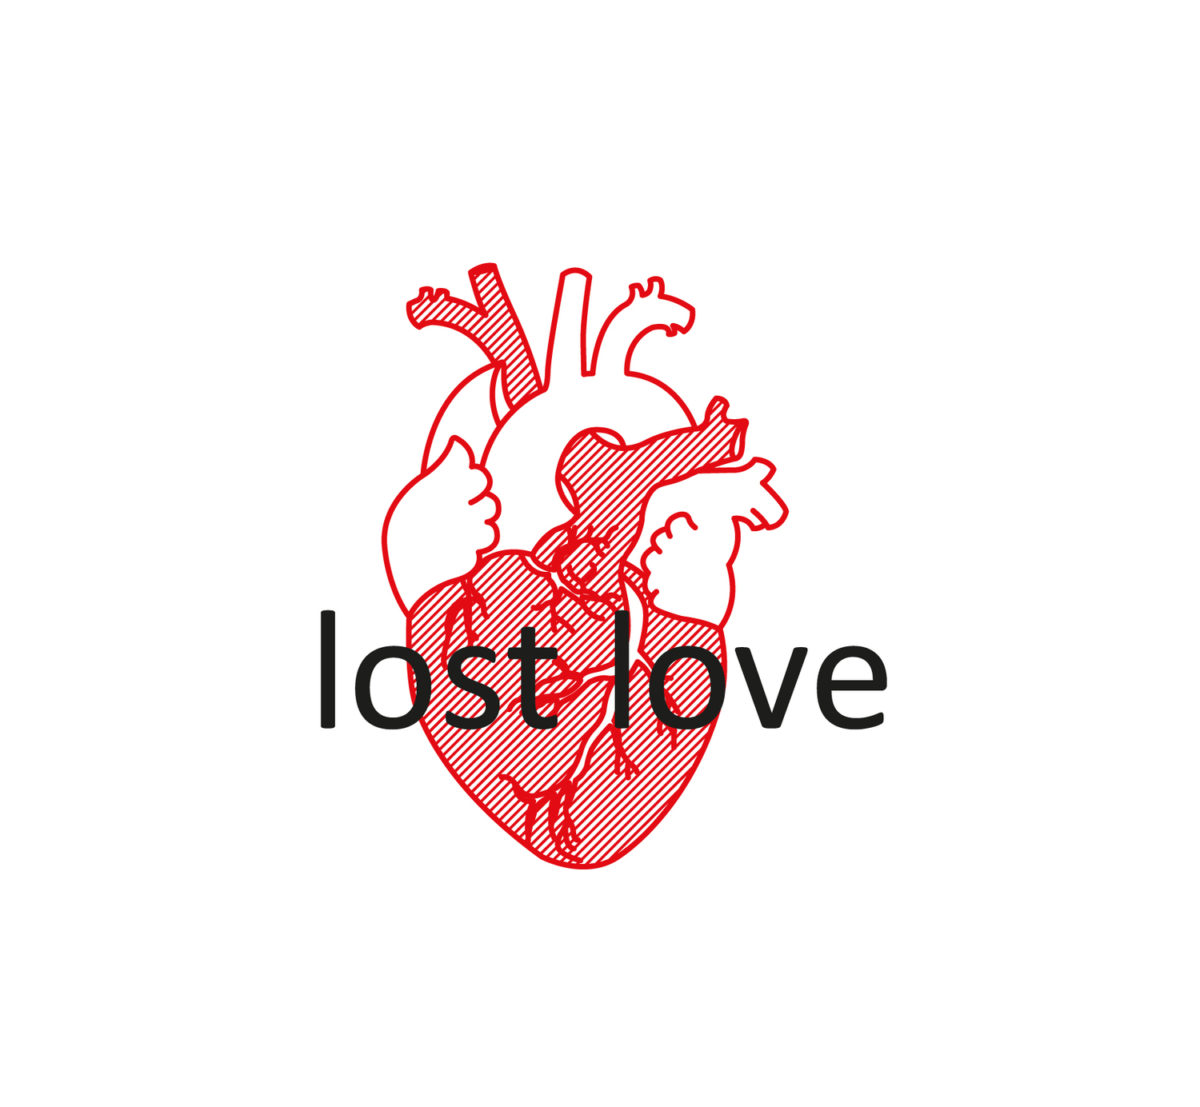 LOST LOVE – DEBATAFTEN